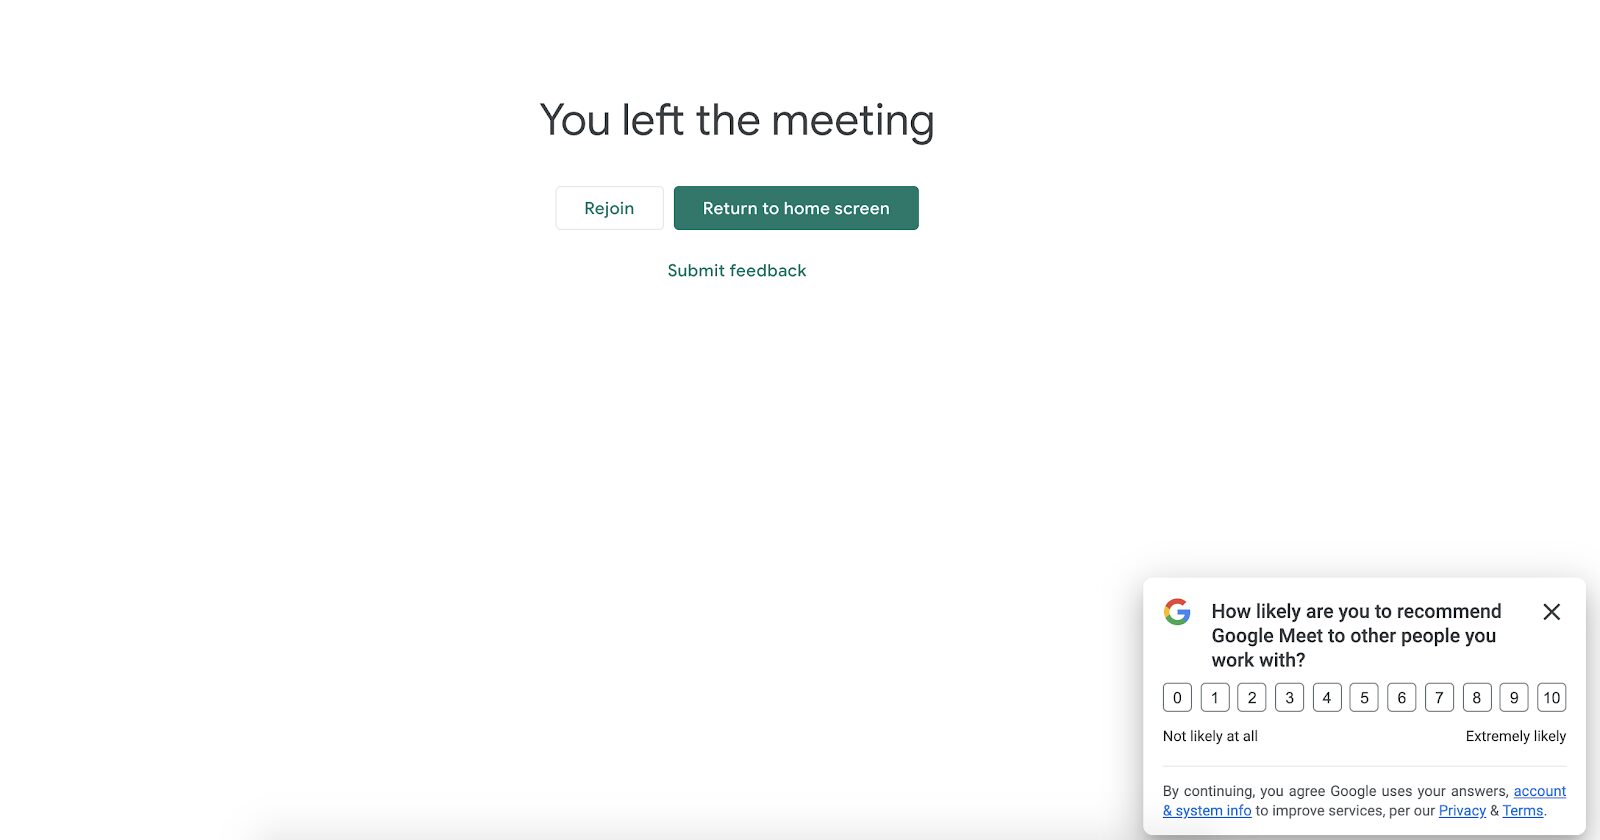 La encuesta NPS de Google Meet aparece después de que el visitante finaliza una llamada, para que pueda brindar comentarios de inmediato sobre su experiencia. Es una gran táctica para alentar a los usuarios a compartir comentarios mientras aún están frescos.